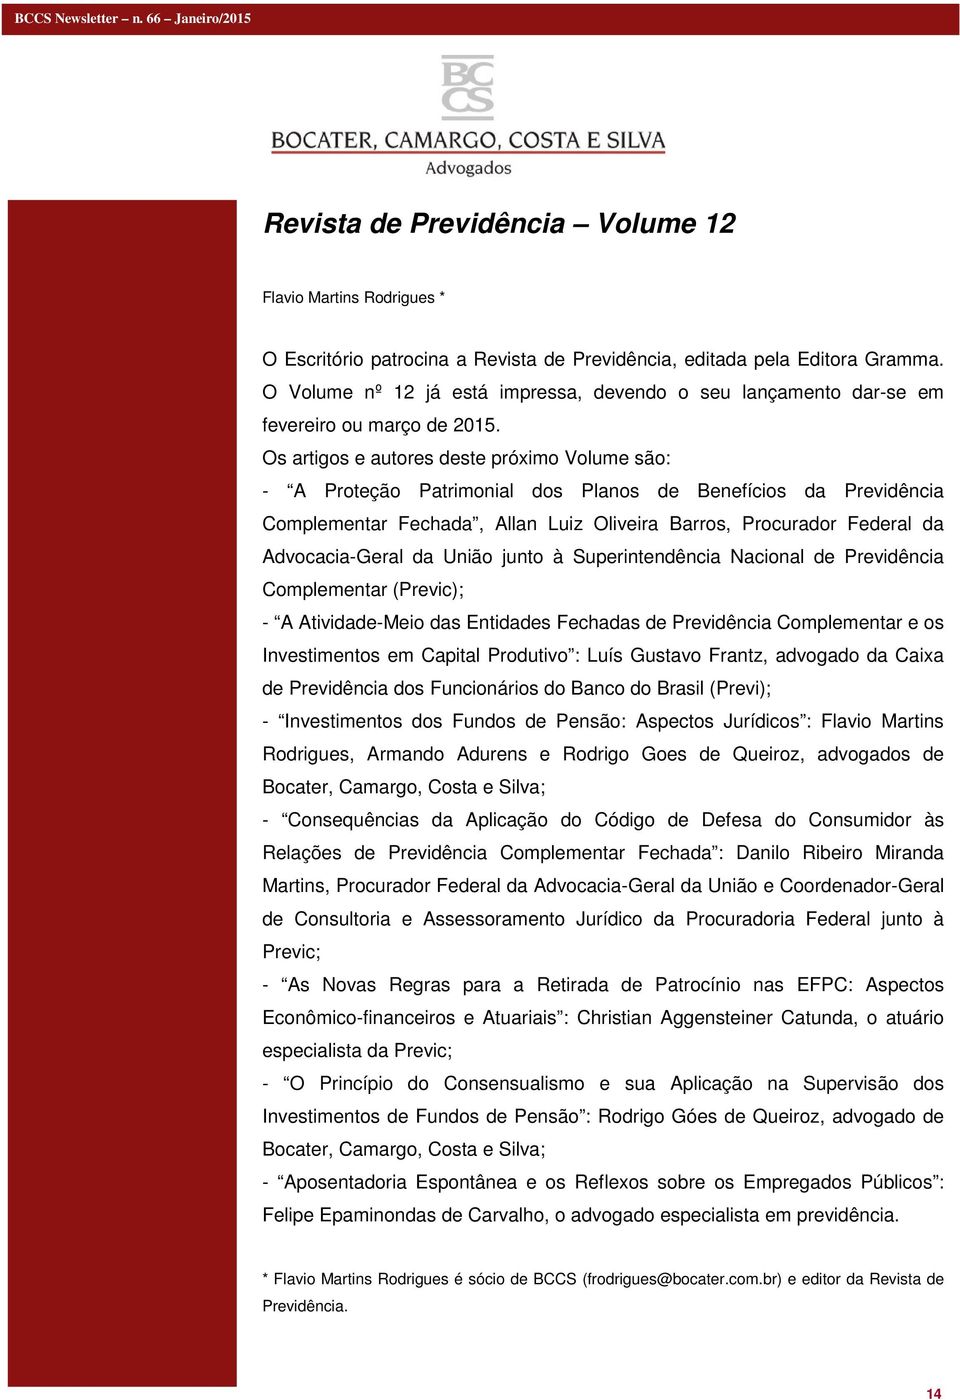 Os artigos e autores deste próximo Volume são: - A Proteção Patrimonial dos Planos de Benefícios da Previdência Complementar Fechada, Allan Luiz Oliveira Barros, Procurador Federal da Advocacia-Geral